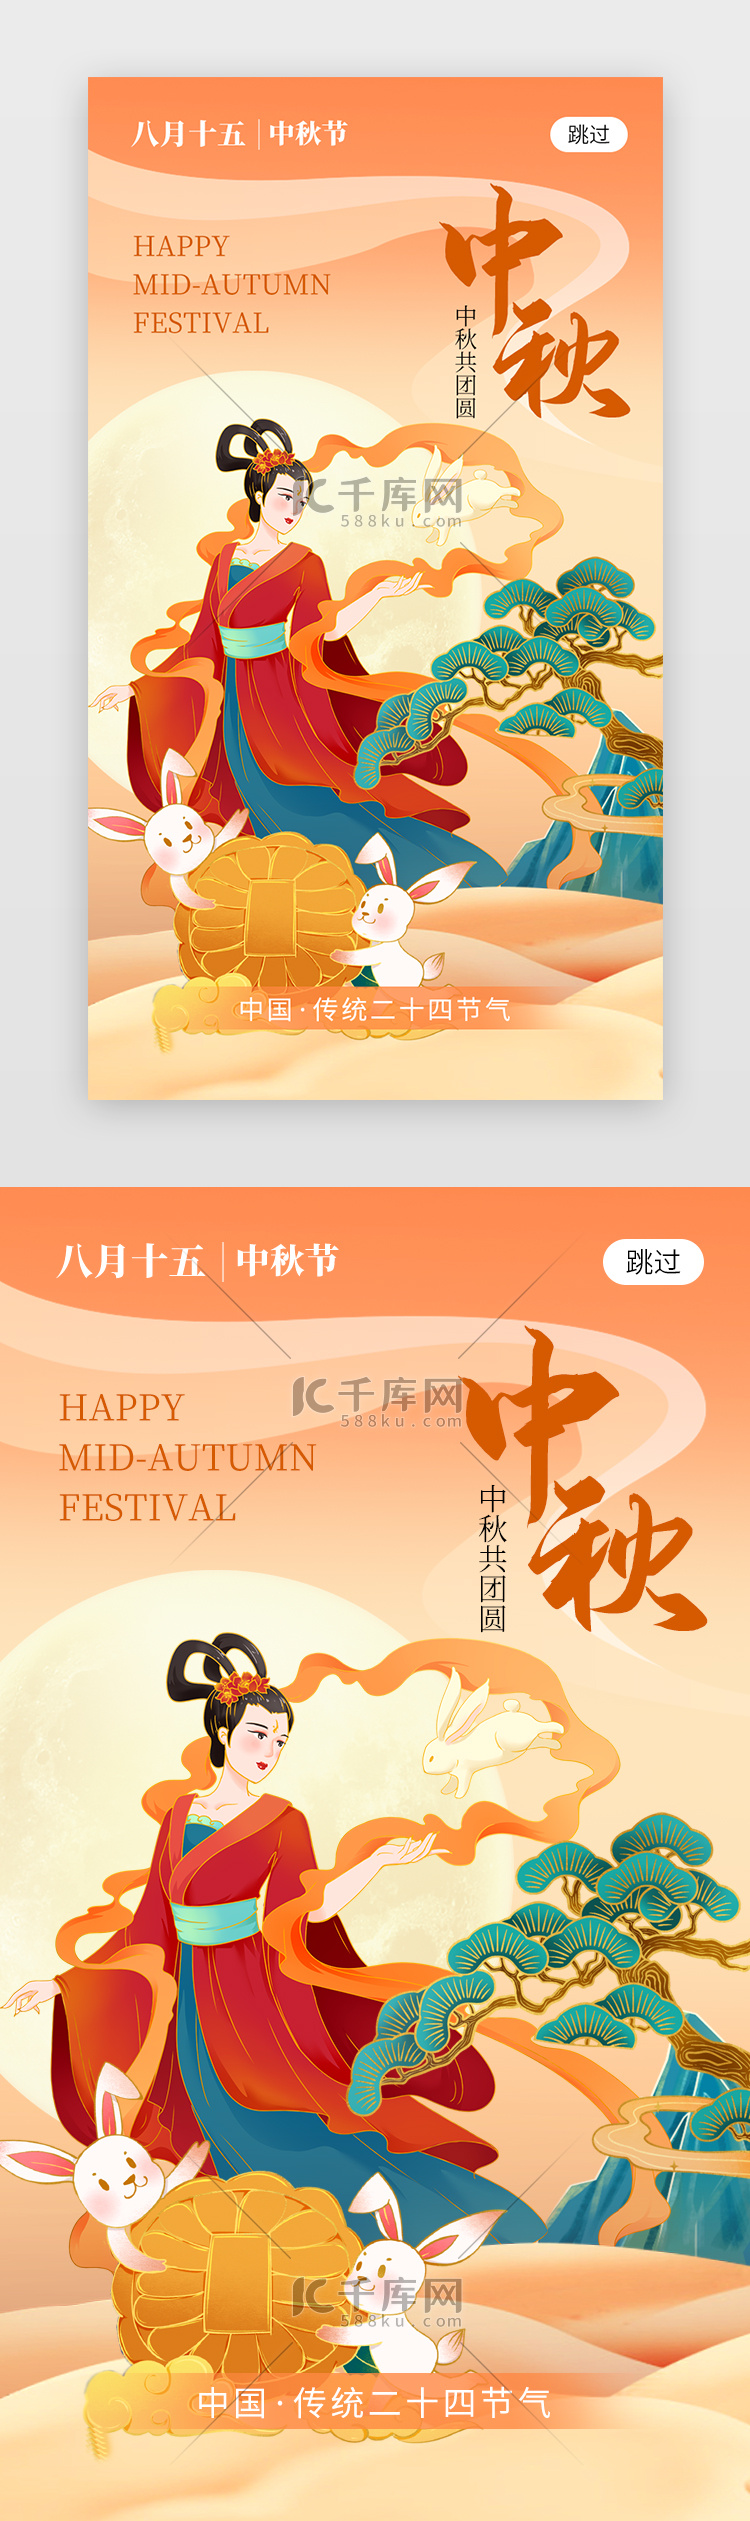 中秋节app闪屏创意橙黄色嫦娥